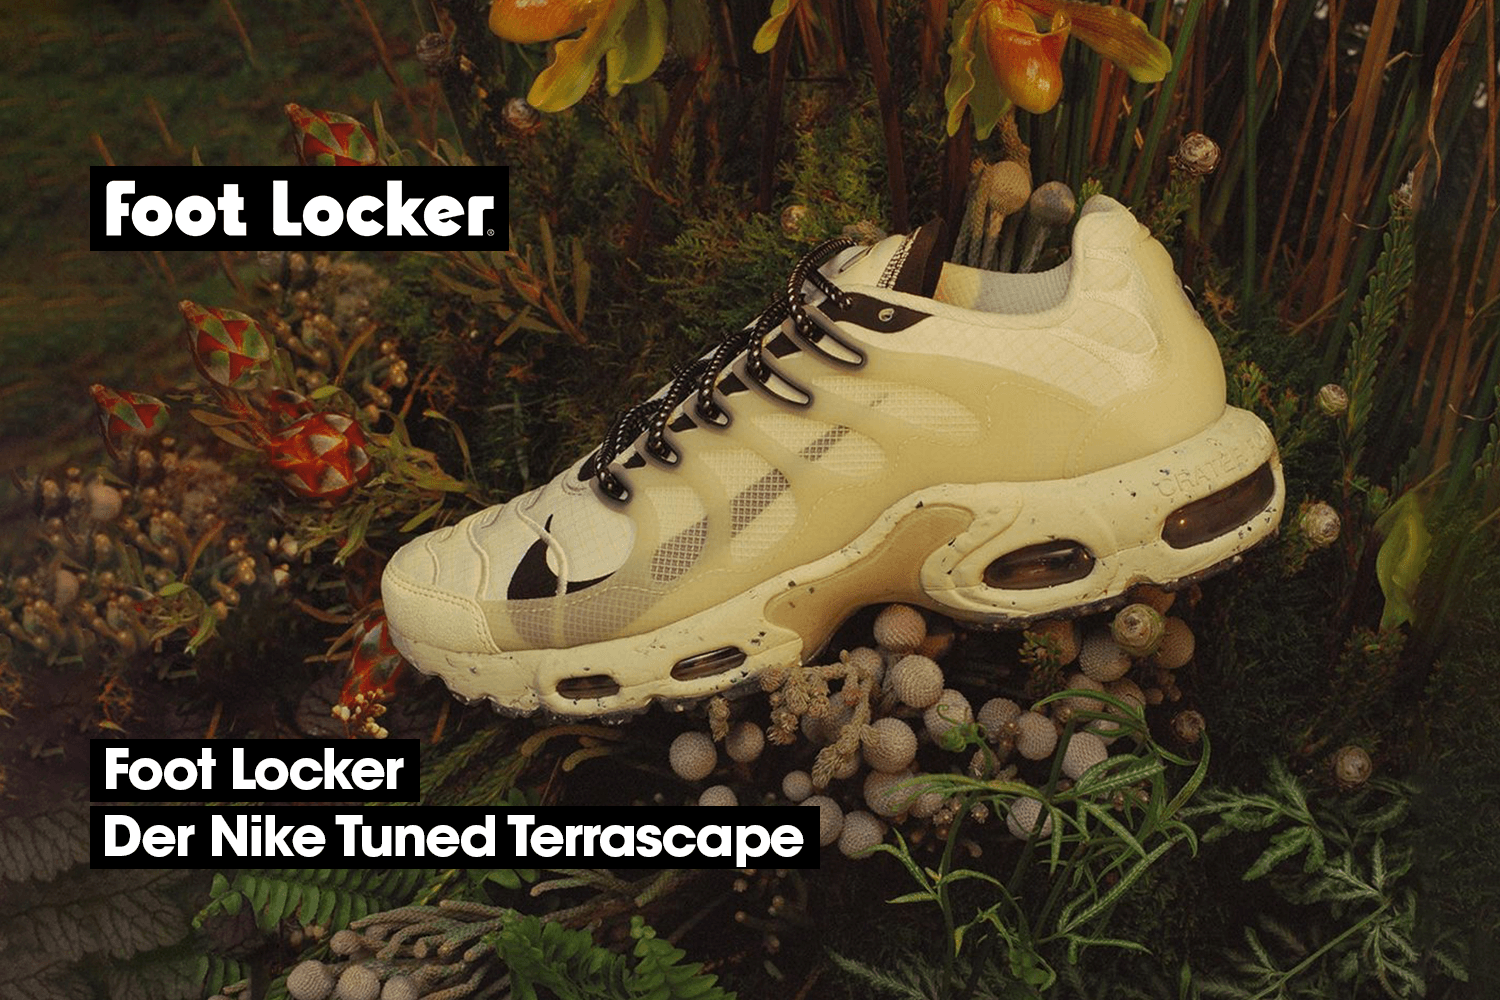 Die Nike Tuned Terrascape Modelle bei Foot Locker